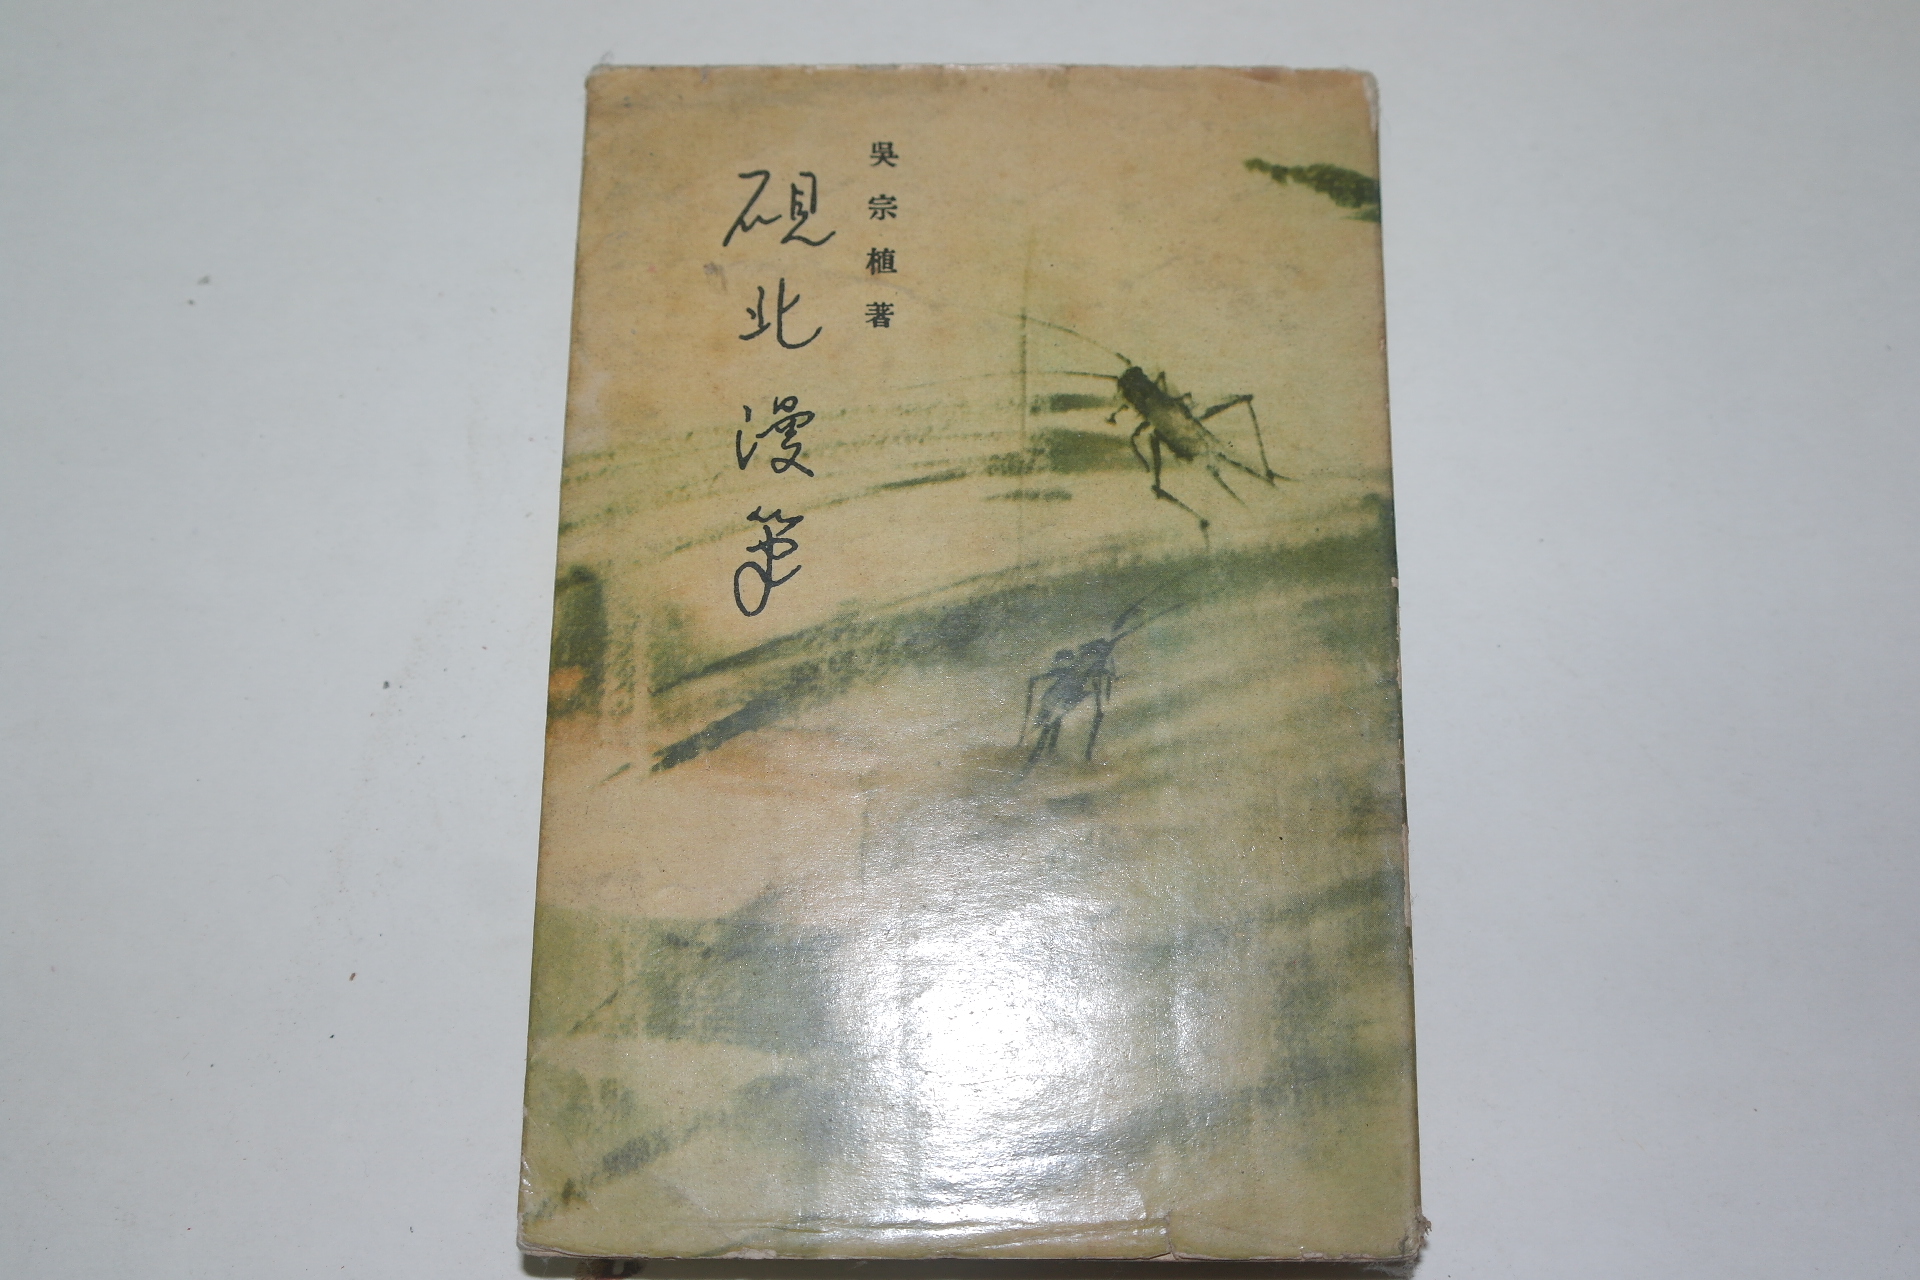 1960년초판 오종식(吳宗植) 연북만필(硯北漫筆)